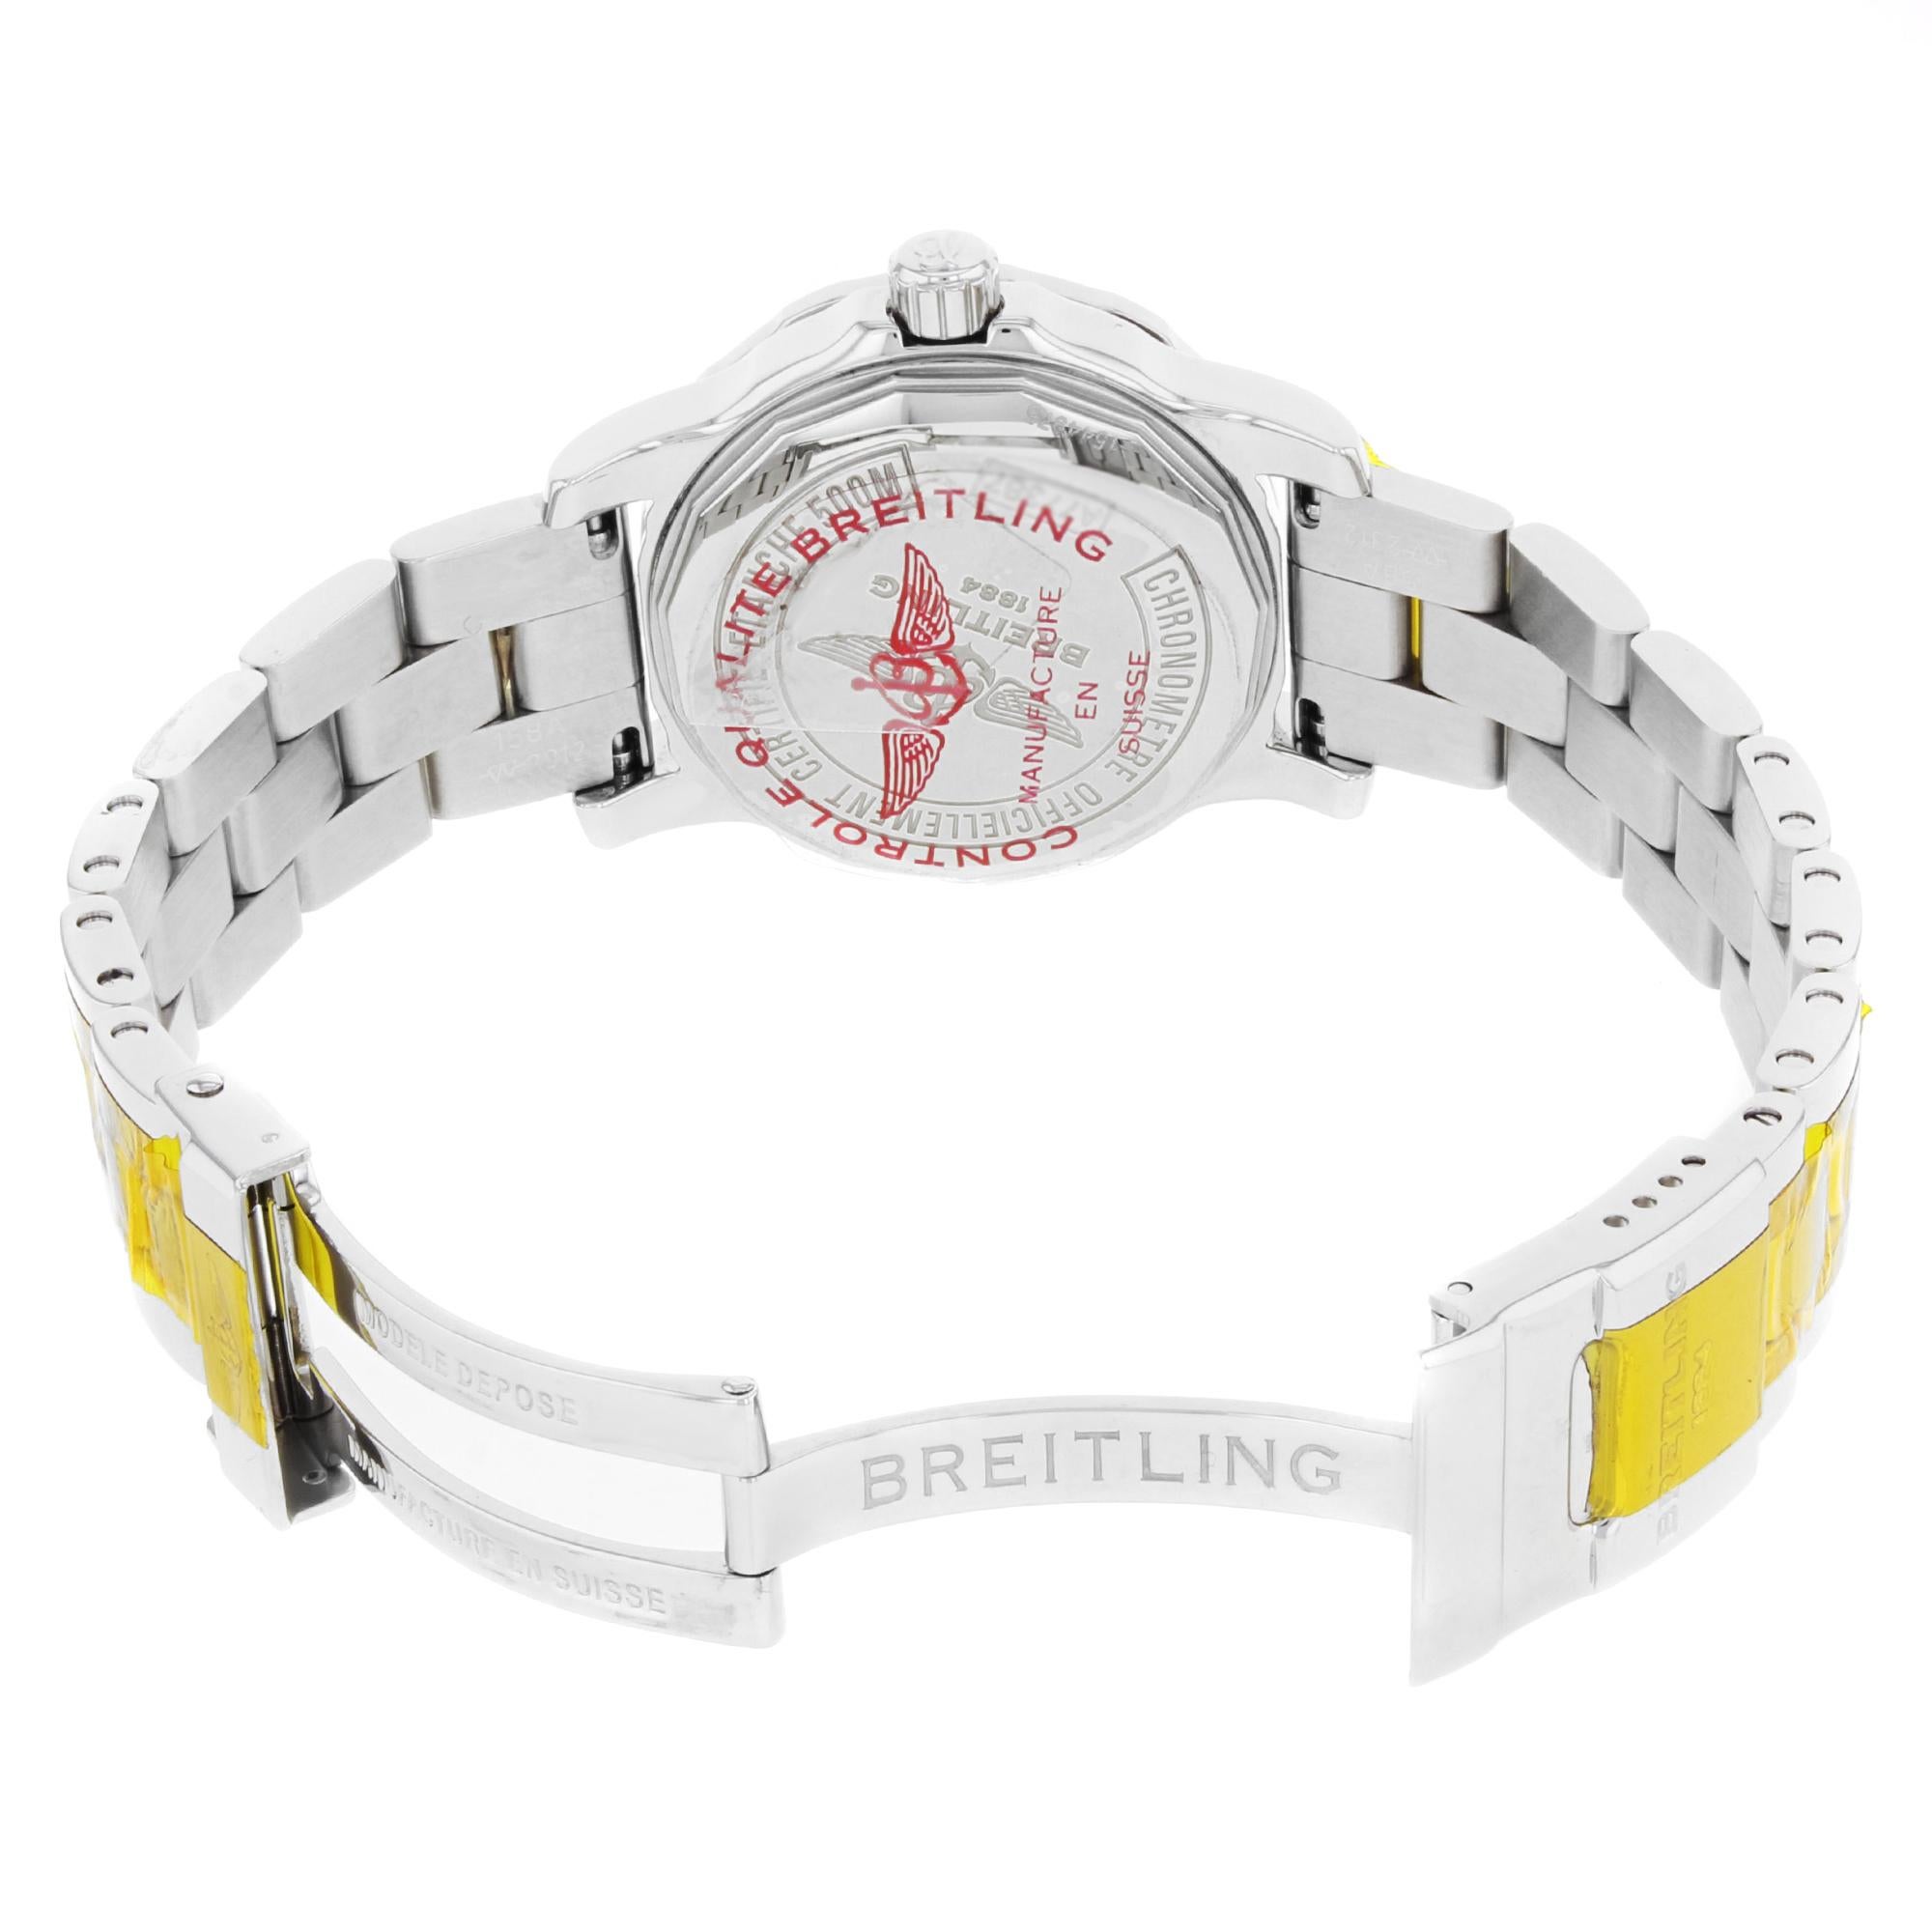 Breitling Colt 33 Black Dial Diamonds Ladies Quartz Watch A7738753/BB51-158A 2